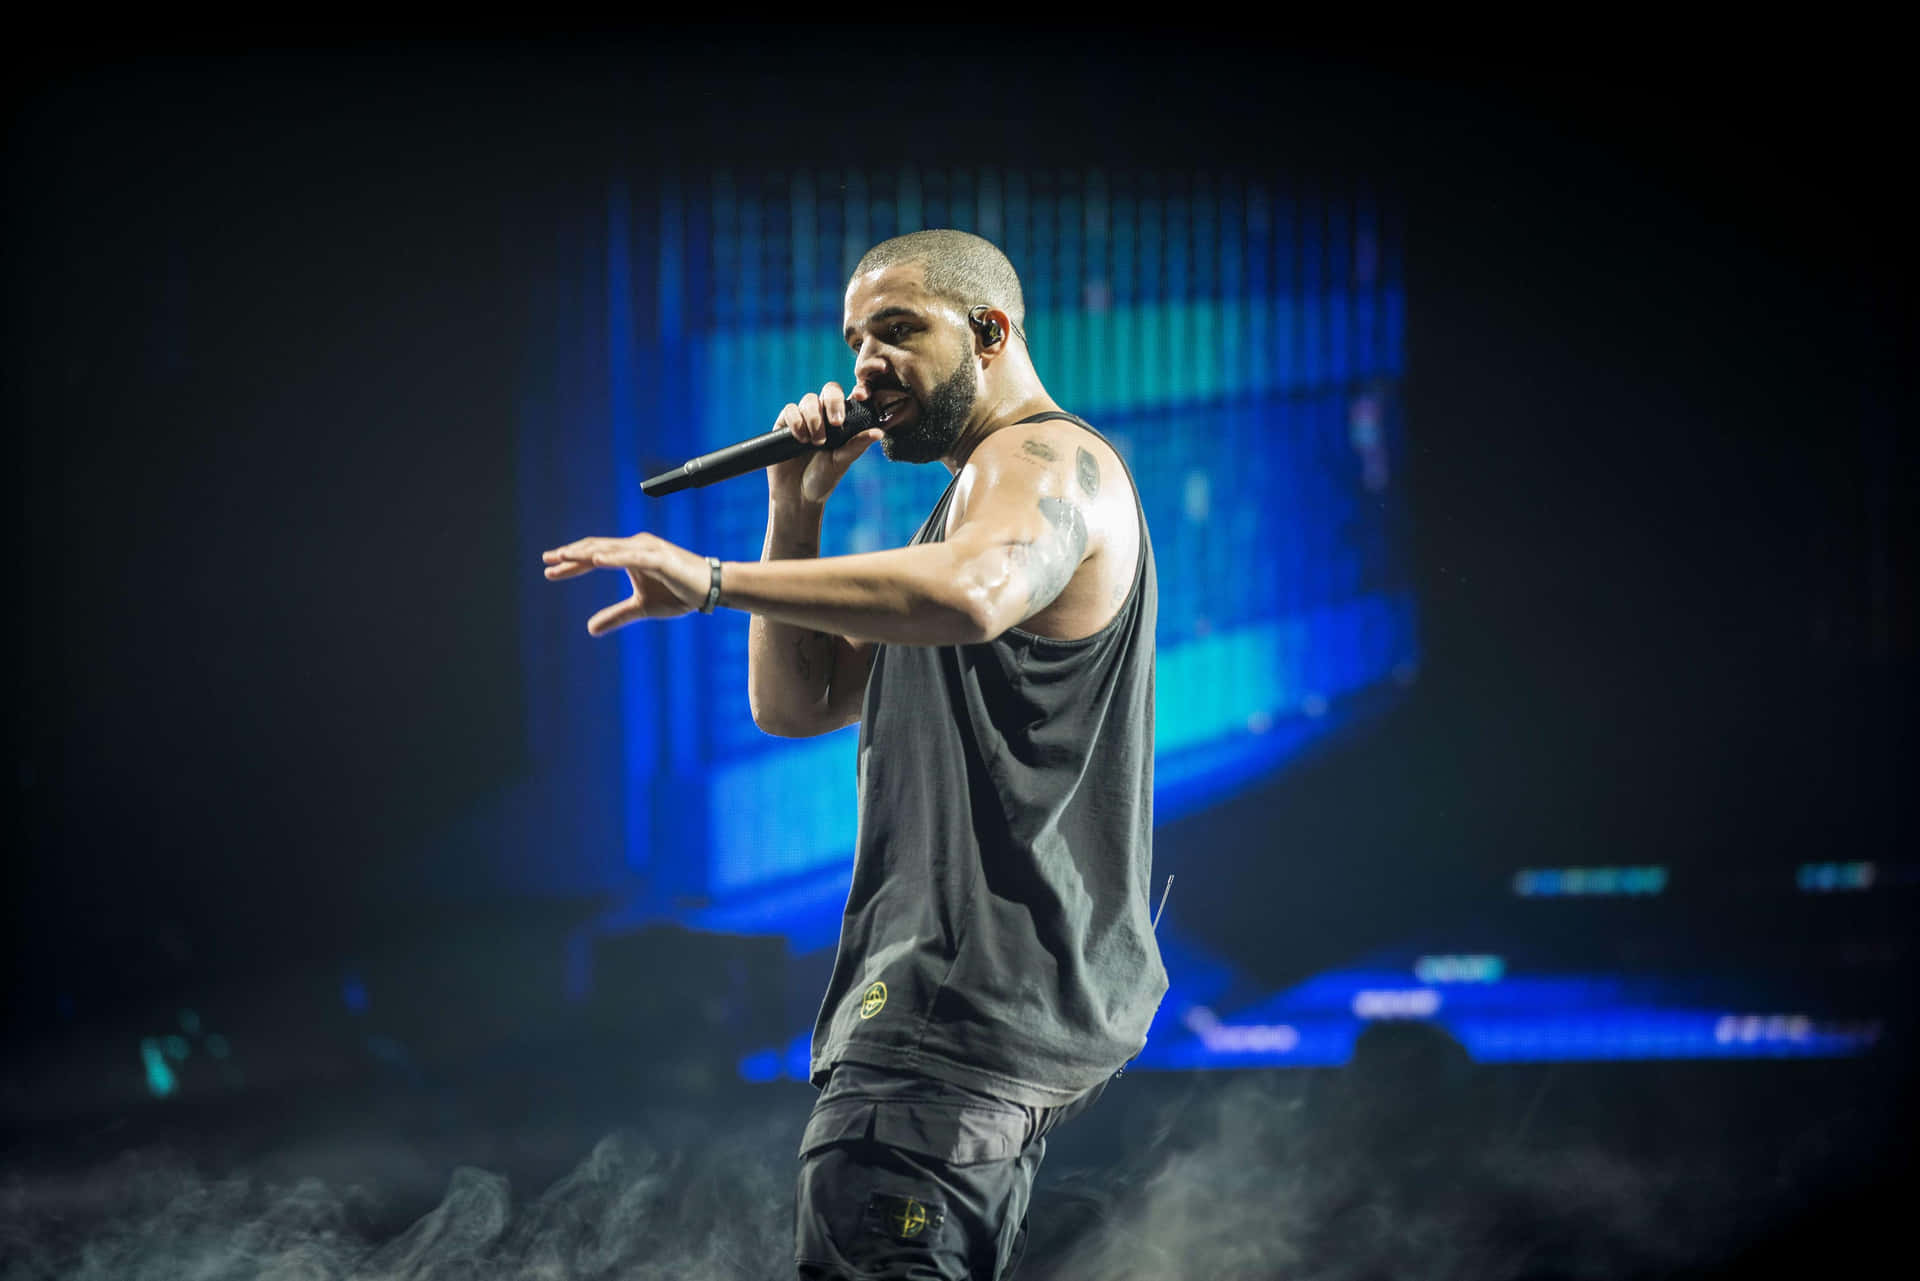 Drake optræder på scenen i et rygerigt arena. Wallpaper